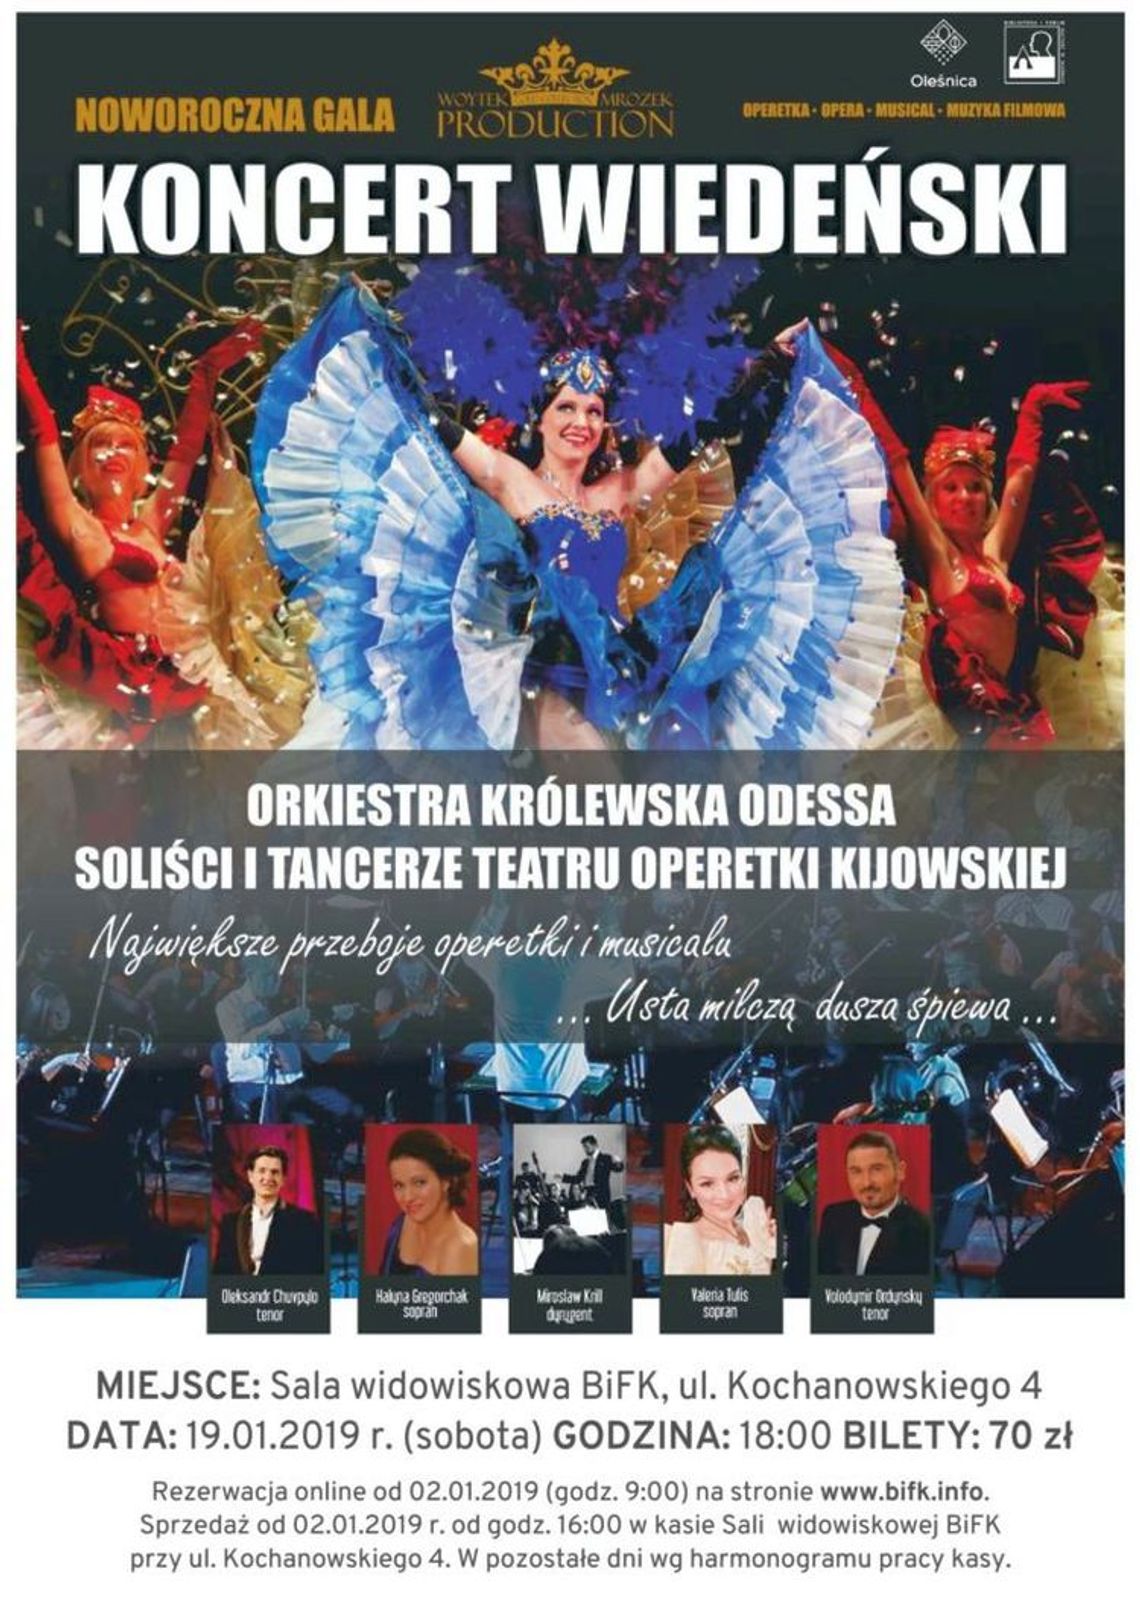 Gala Noworoczna - Koncert Wiedeński